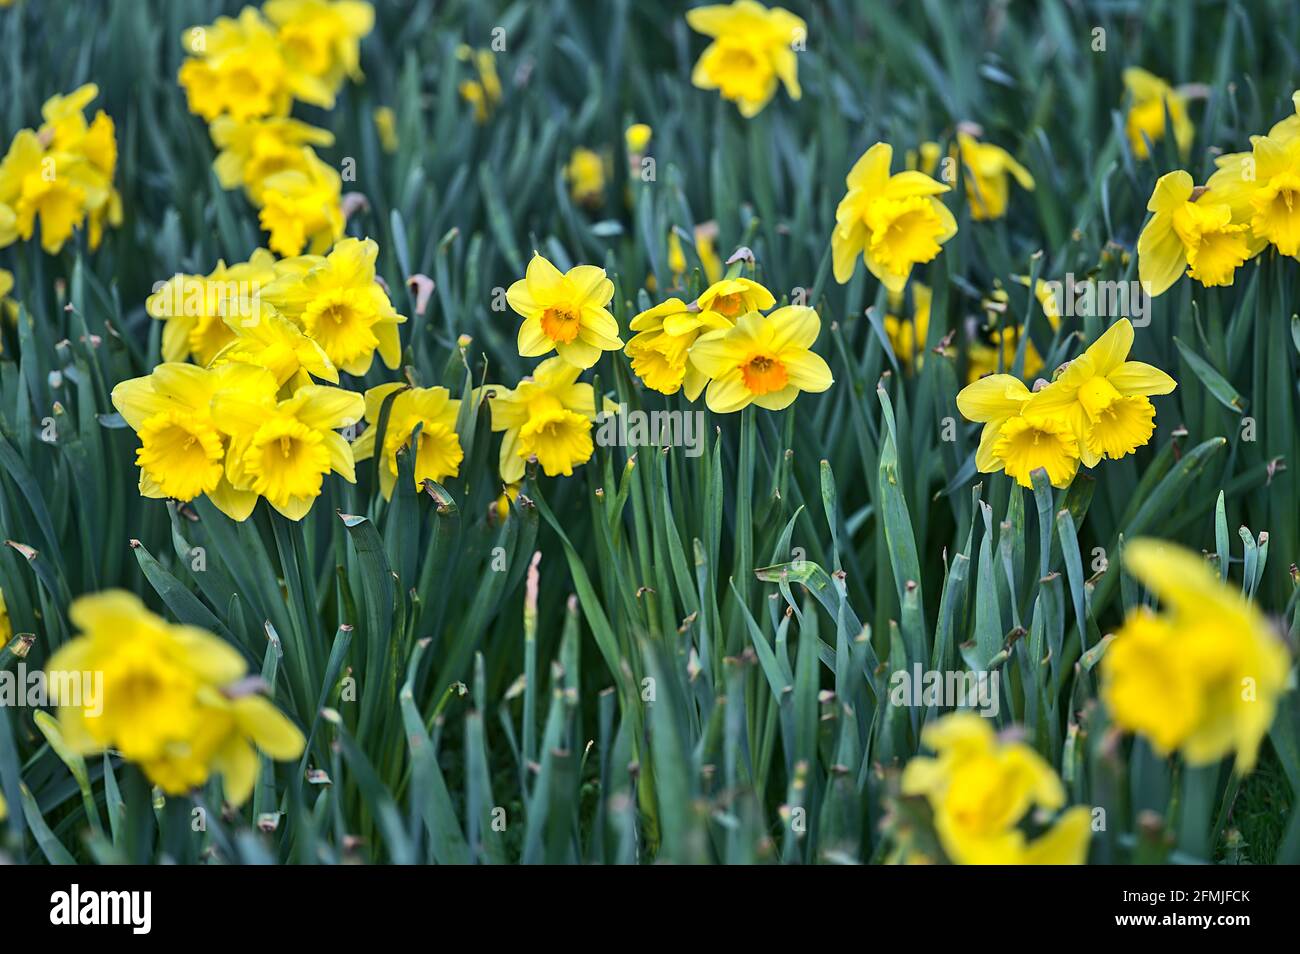 Belle vue de près du sol basse des jonquilles jaunes (Narcissus) avec corona orange à Marlay Park, Dublin, Irlande. Doux et sélectif Banque D'Images